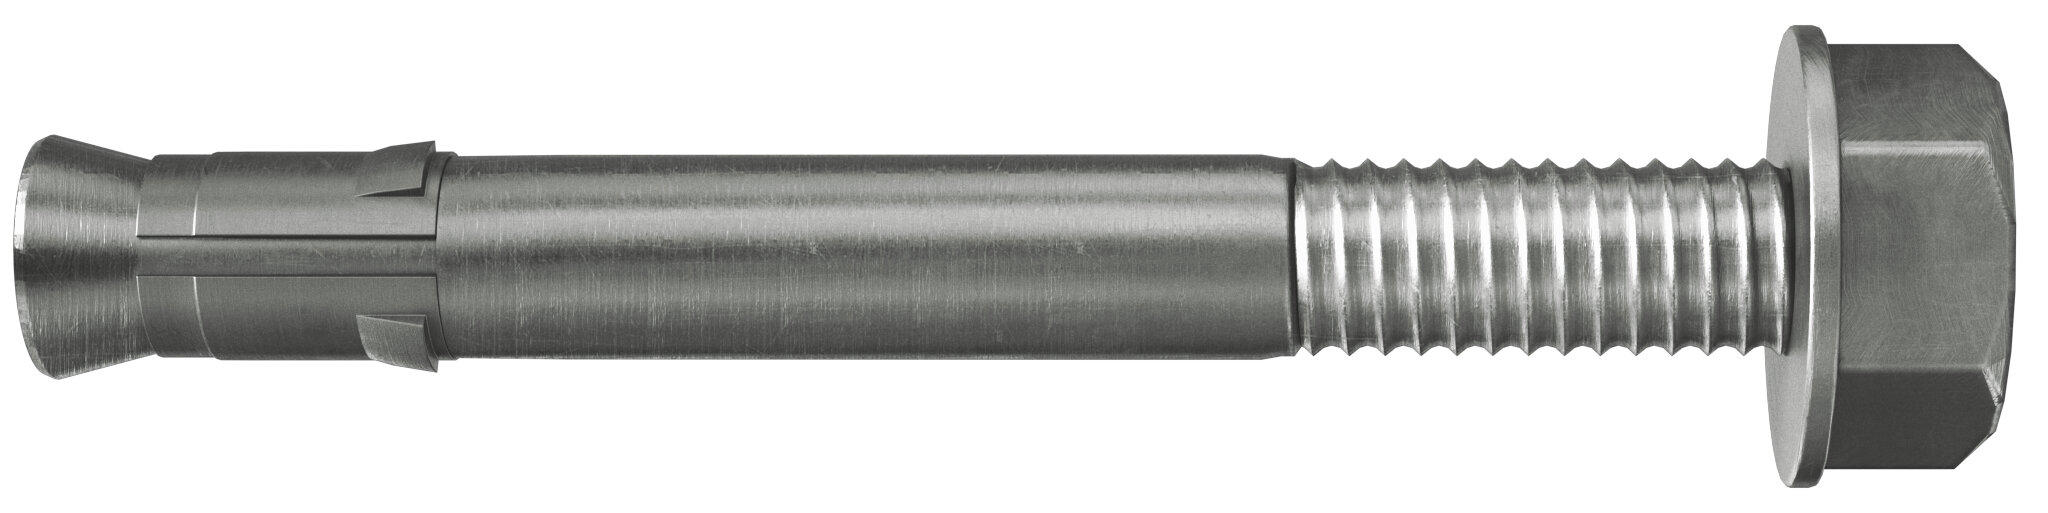 Nagelanker FNA II M (hoch korrosionsbeständiger Stahl)